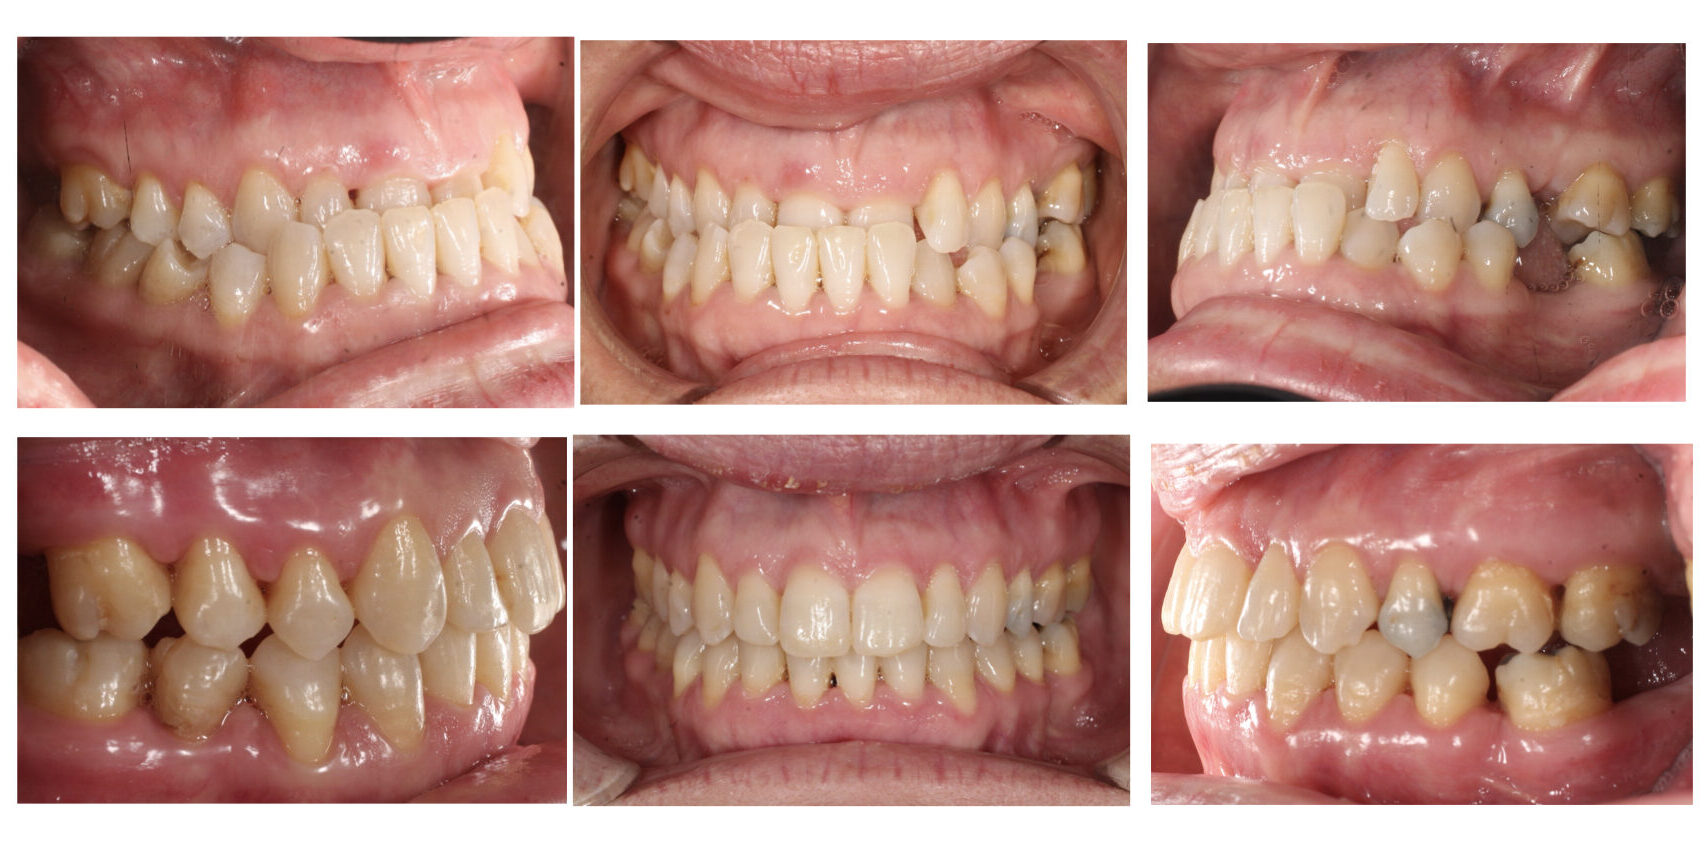 tratamiento ortodoncia: Antes y después de casos reales